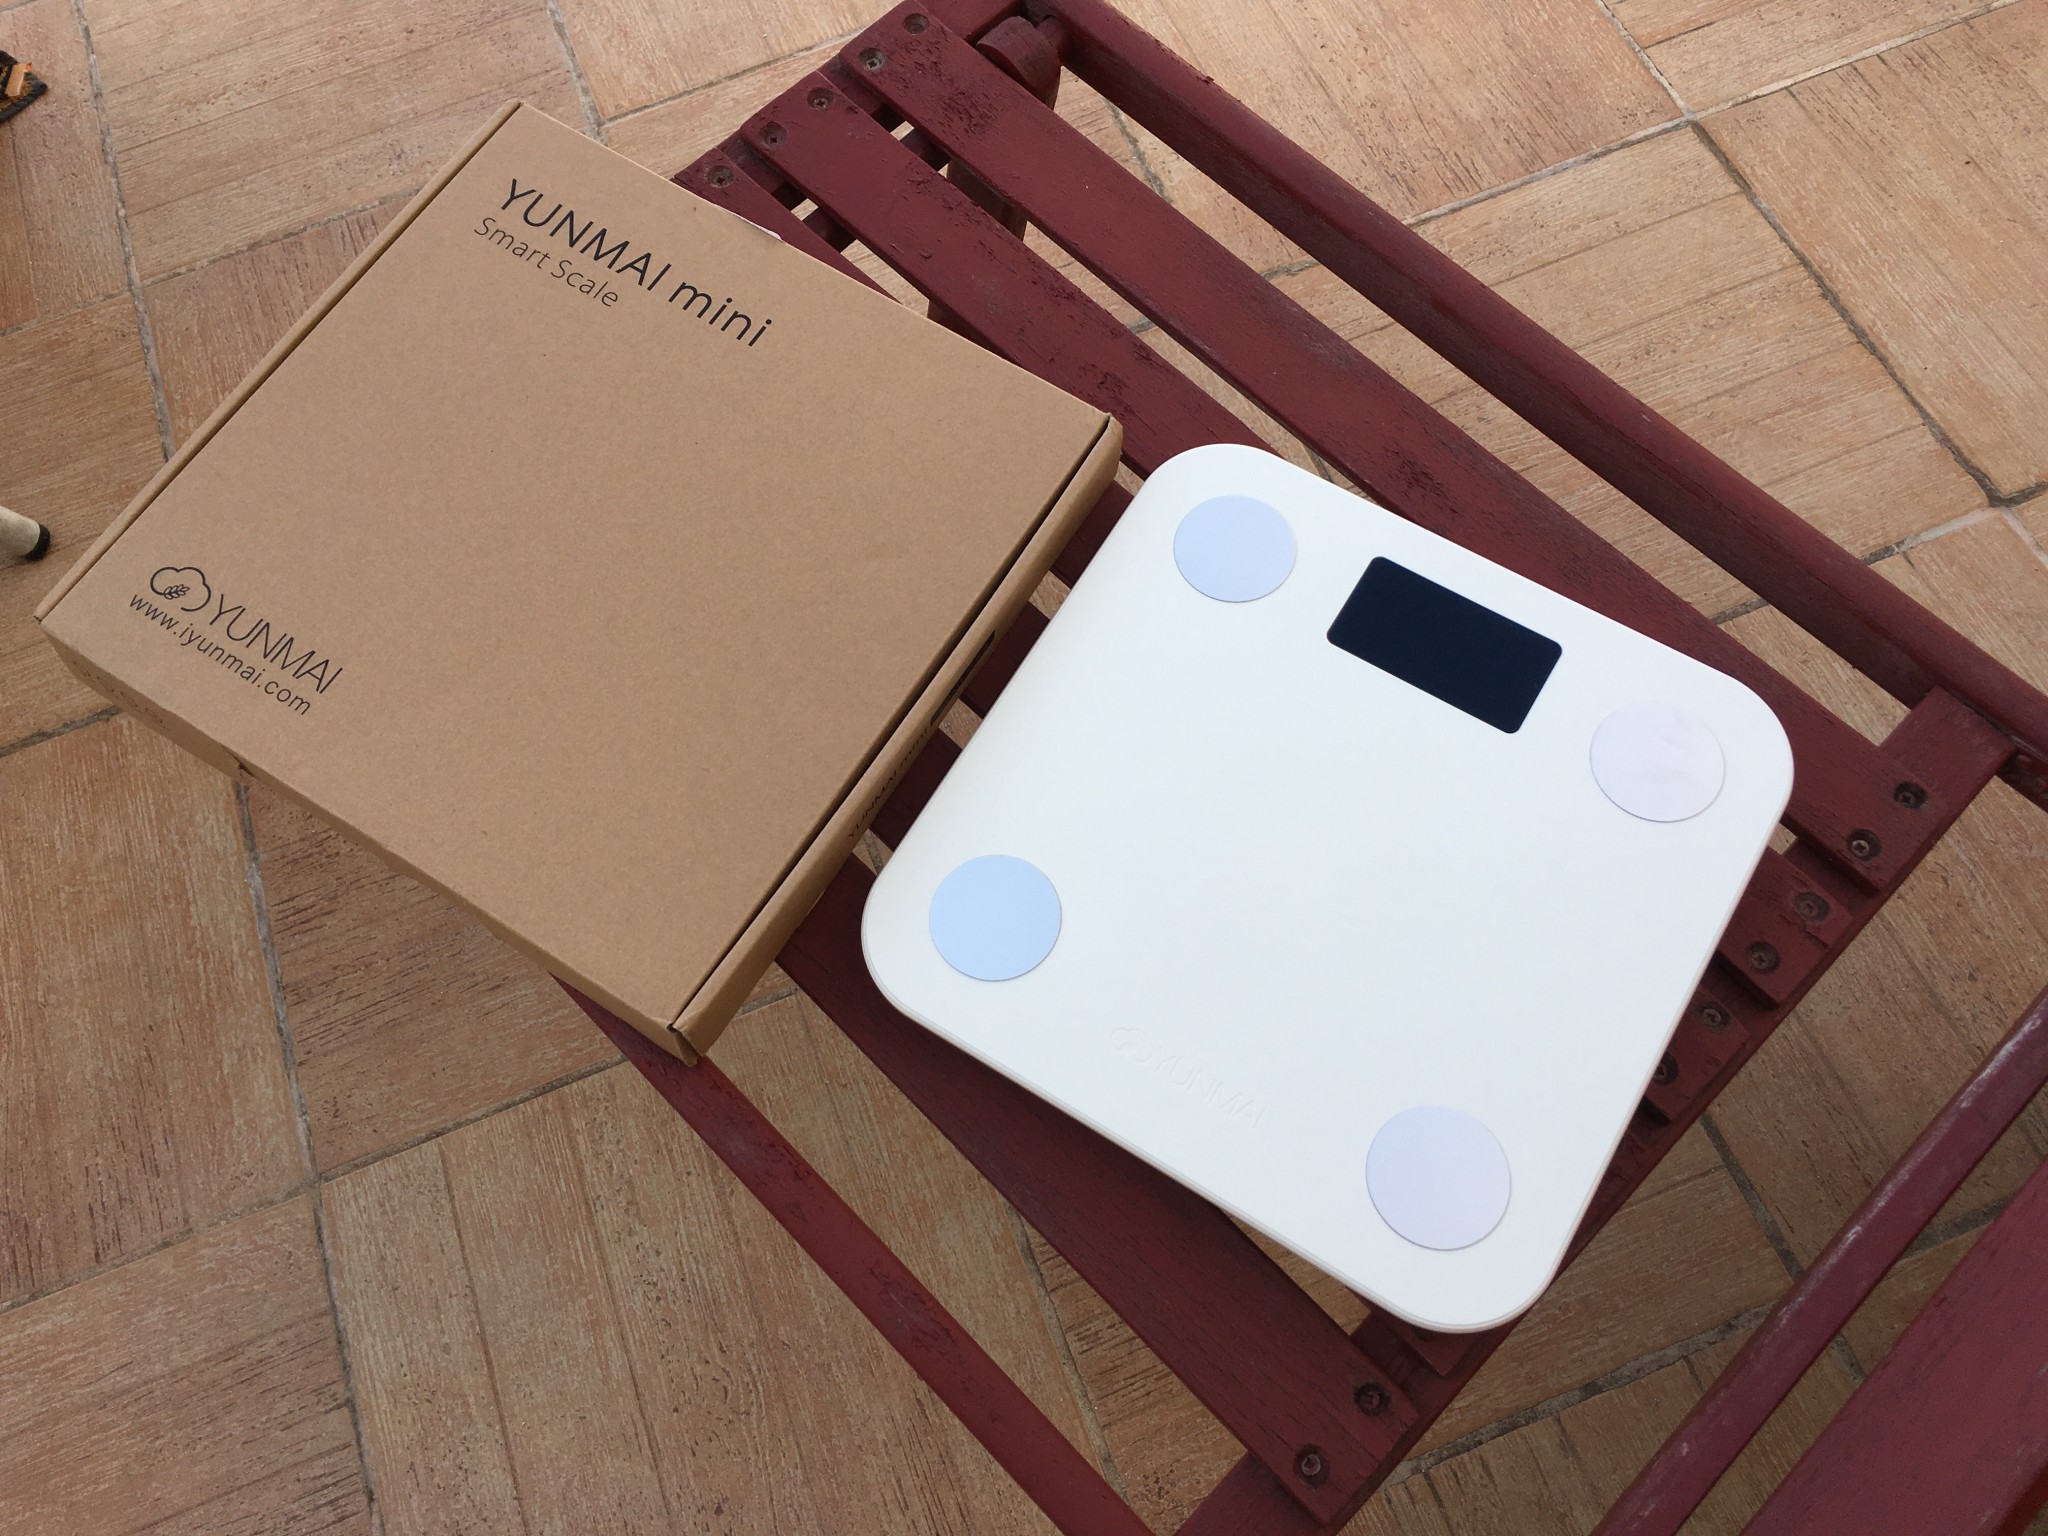 Yunmai Mini Smart Fat Scale : le test complet de la balance connectée à  moins de 30€